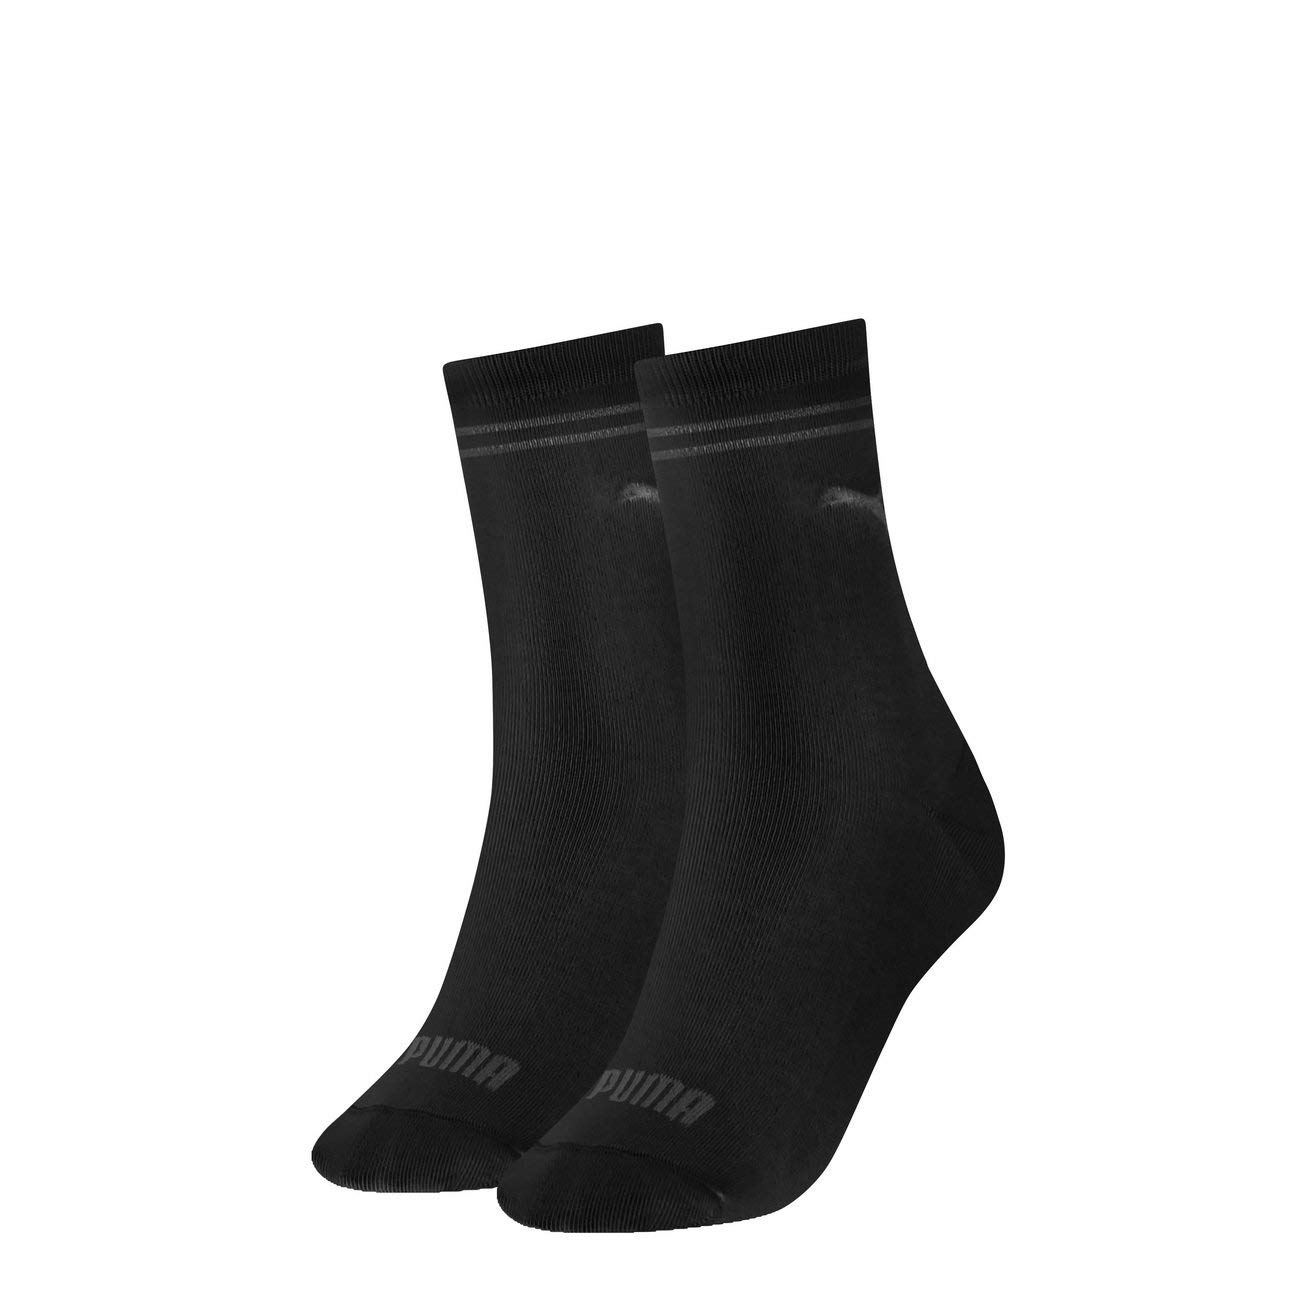 PUMA Damen New Casual Socken Classic 6er Pack, Größe:39-42, Farbe:Black (200)